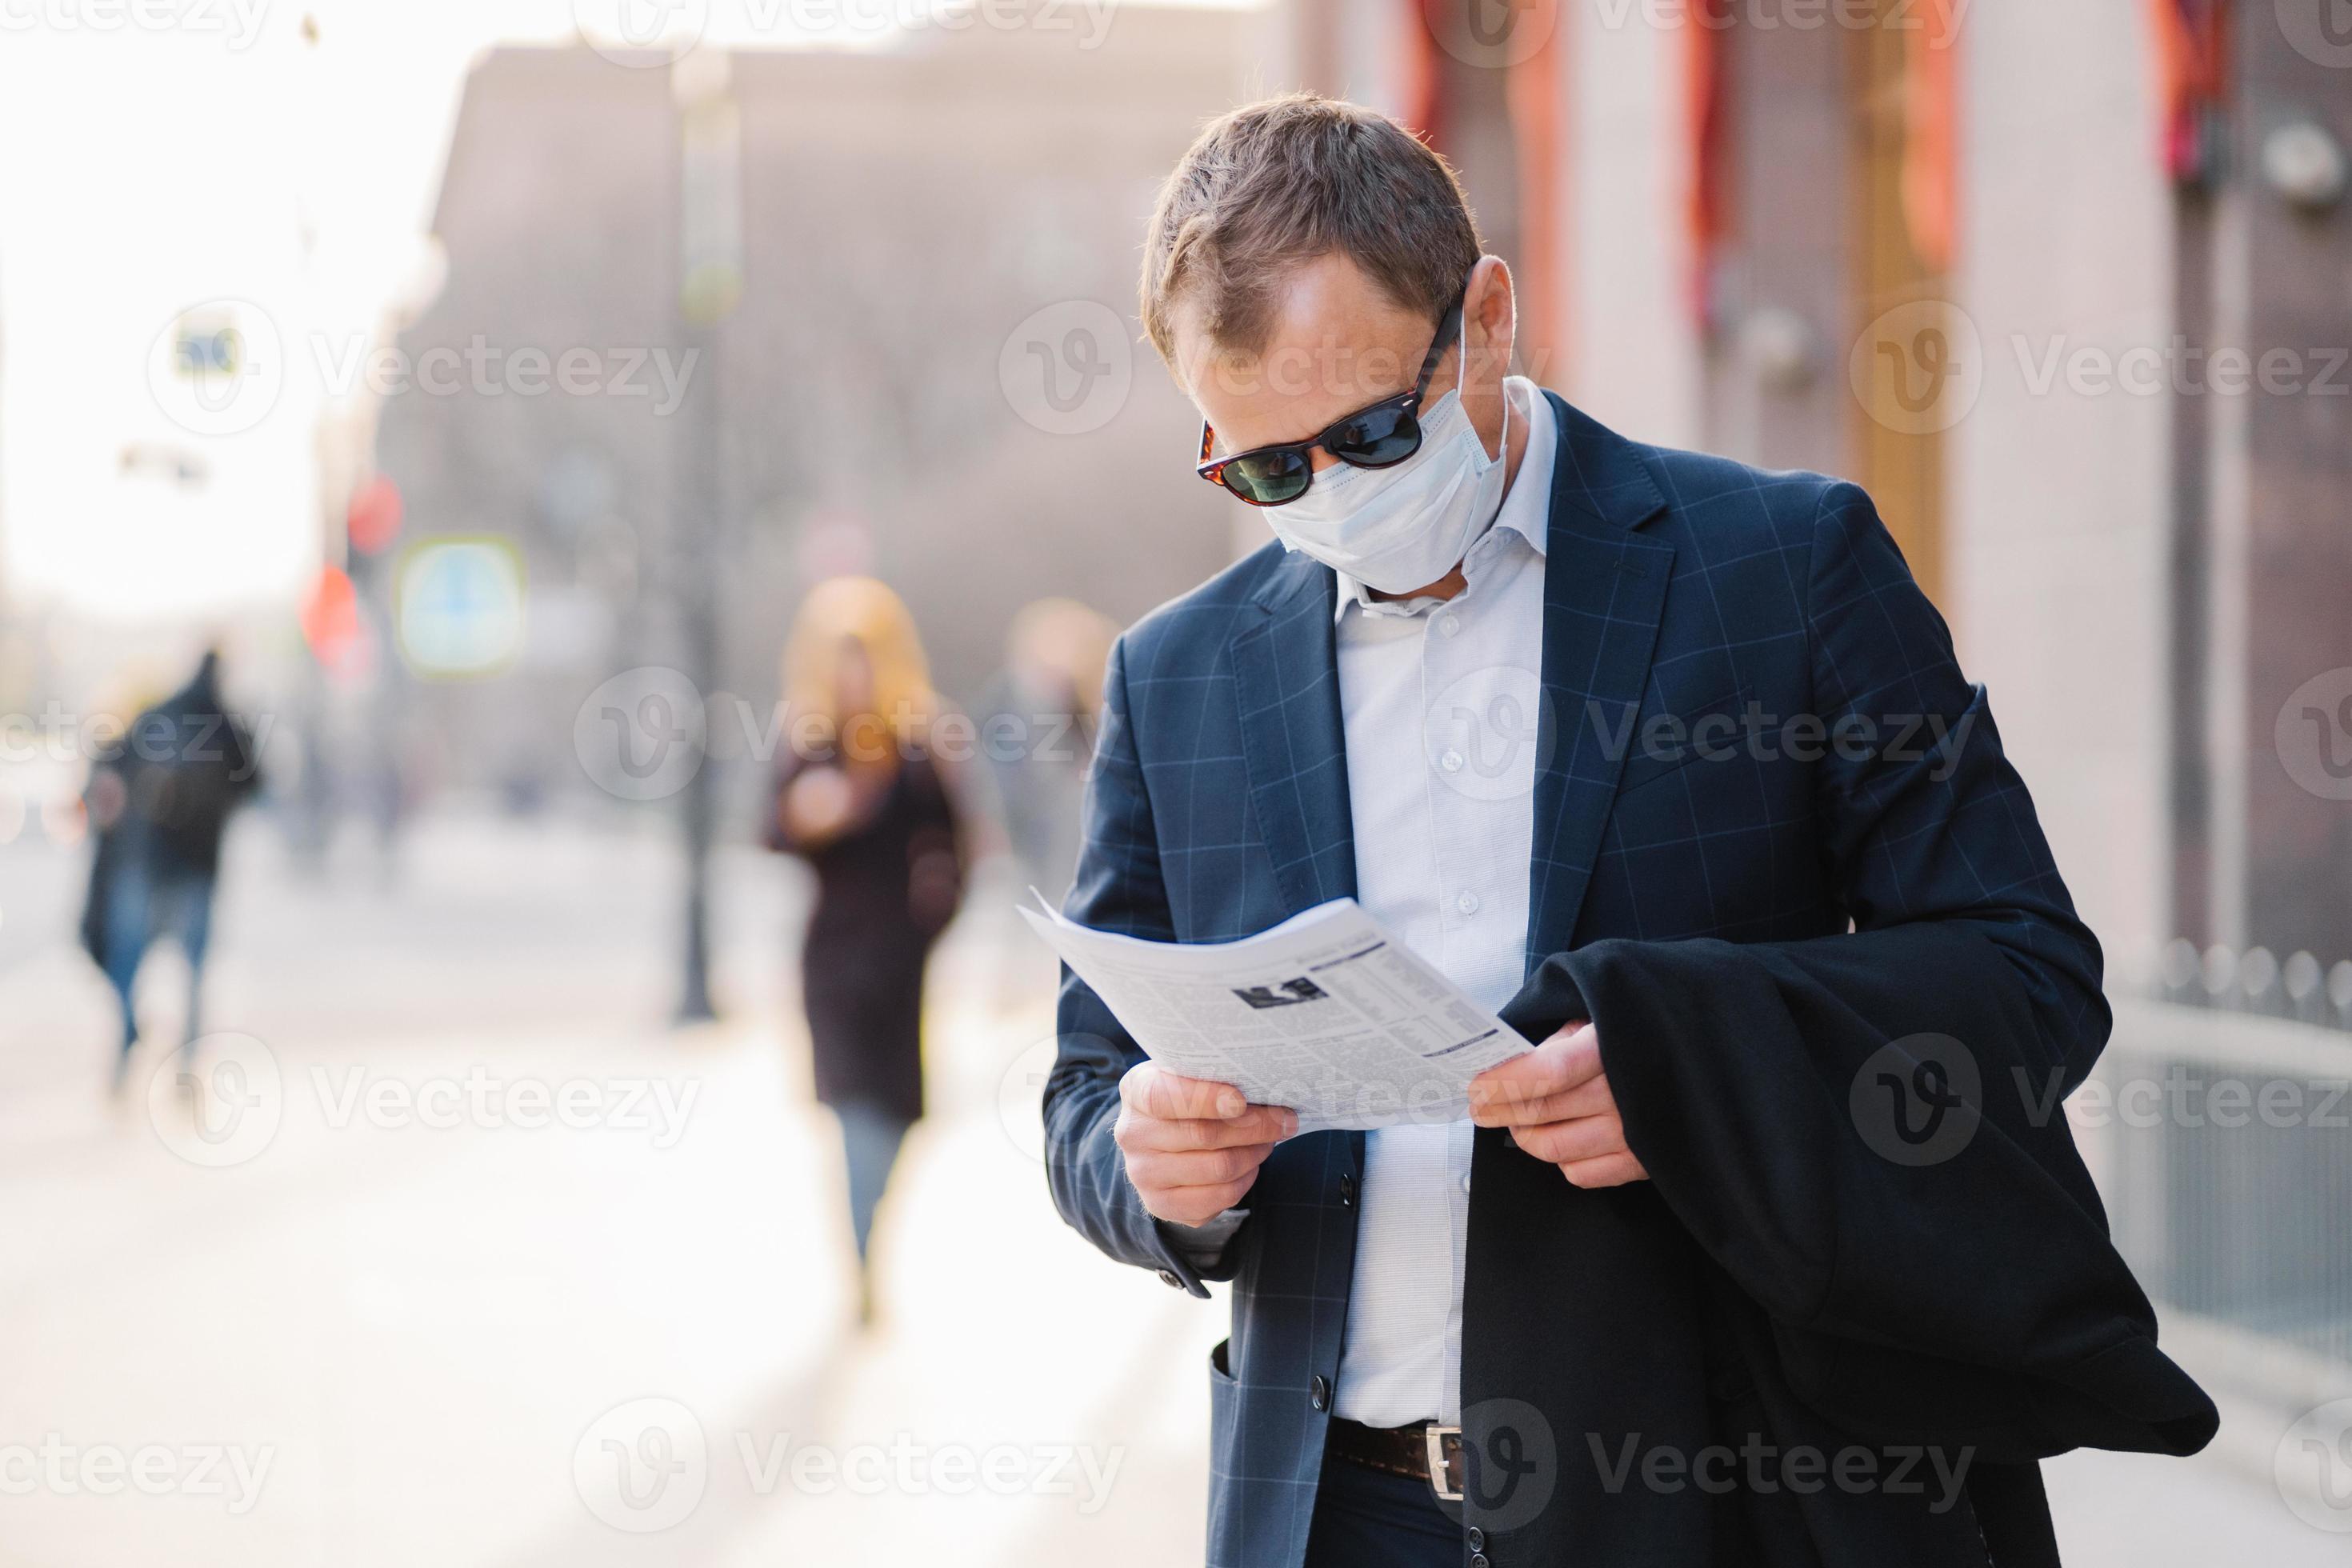 Coronavirus Krankheit. seriöser männlicher banker liest aufmerksam zeitung, erfährt nachrichten über die pandemiesituation auf der ganzen welt, trägt schutzmaske, verhindert die ausbreitung von virus, steht auf der straße. foto